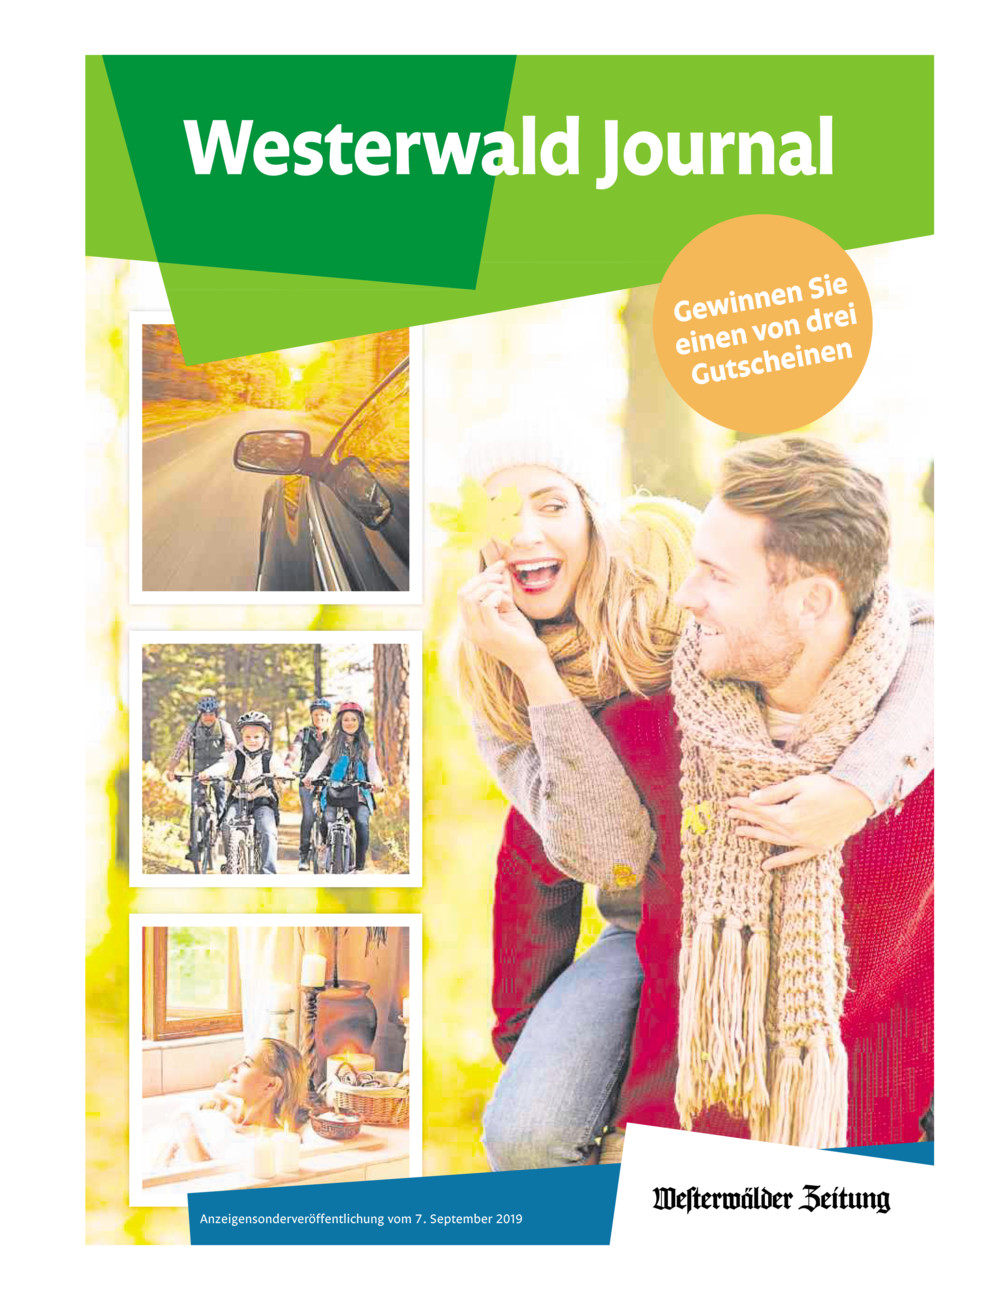 Westerwald Journal 7.9.2019